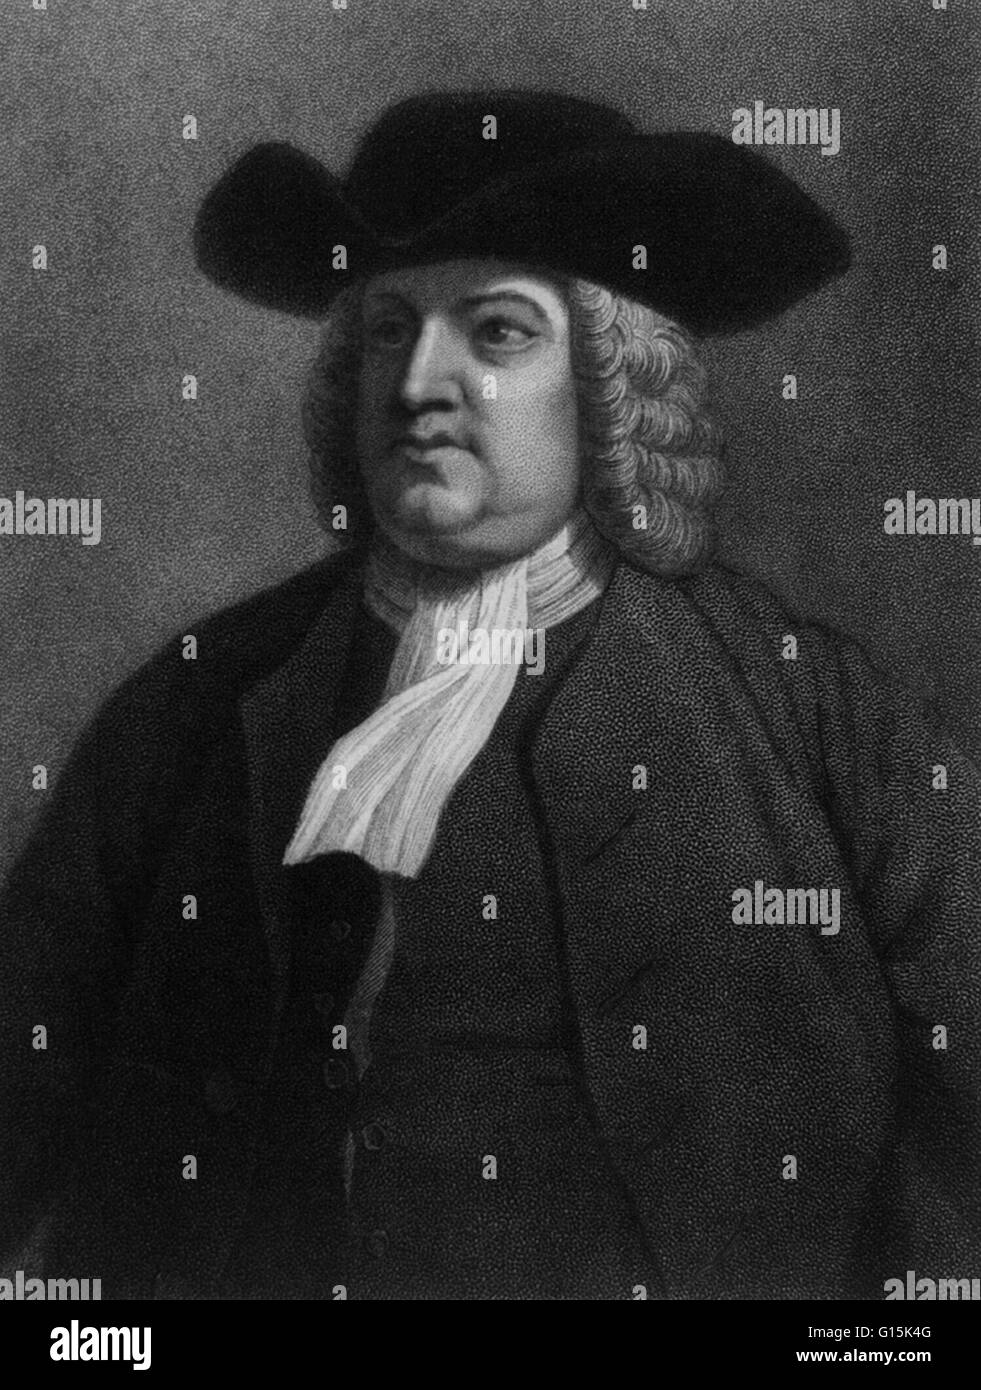 Portrait de William Penn (1644-1718), français, entrepreneur immobilier, philosophe et fondateur de la Pennsylvanie. Il a été l'un des champion de la démocratie et de la liberté religieuse, connu pour ses bonnes relations et traités avec succès les Indiens Lenape. Banque D'Images